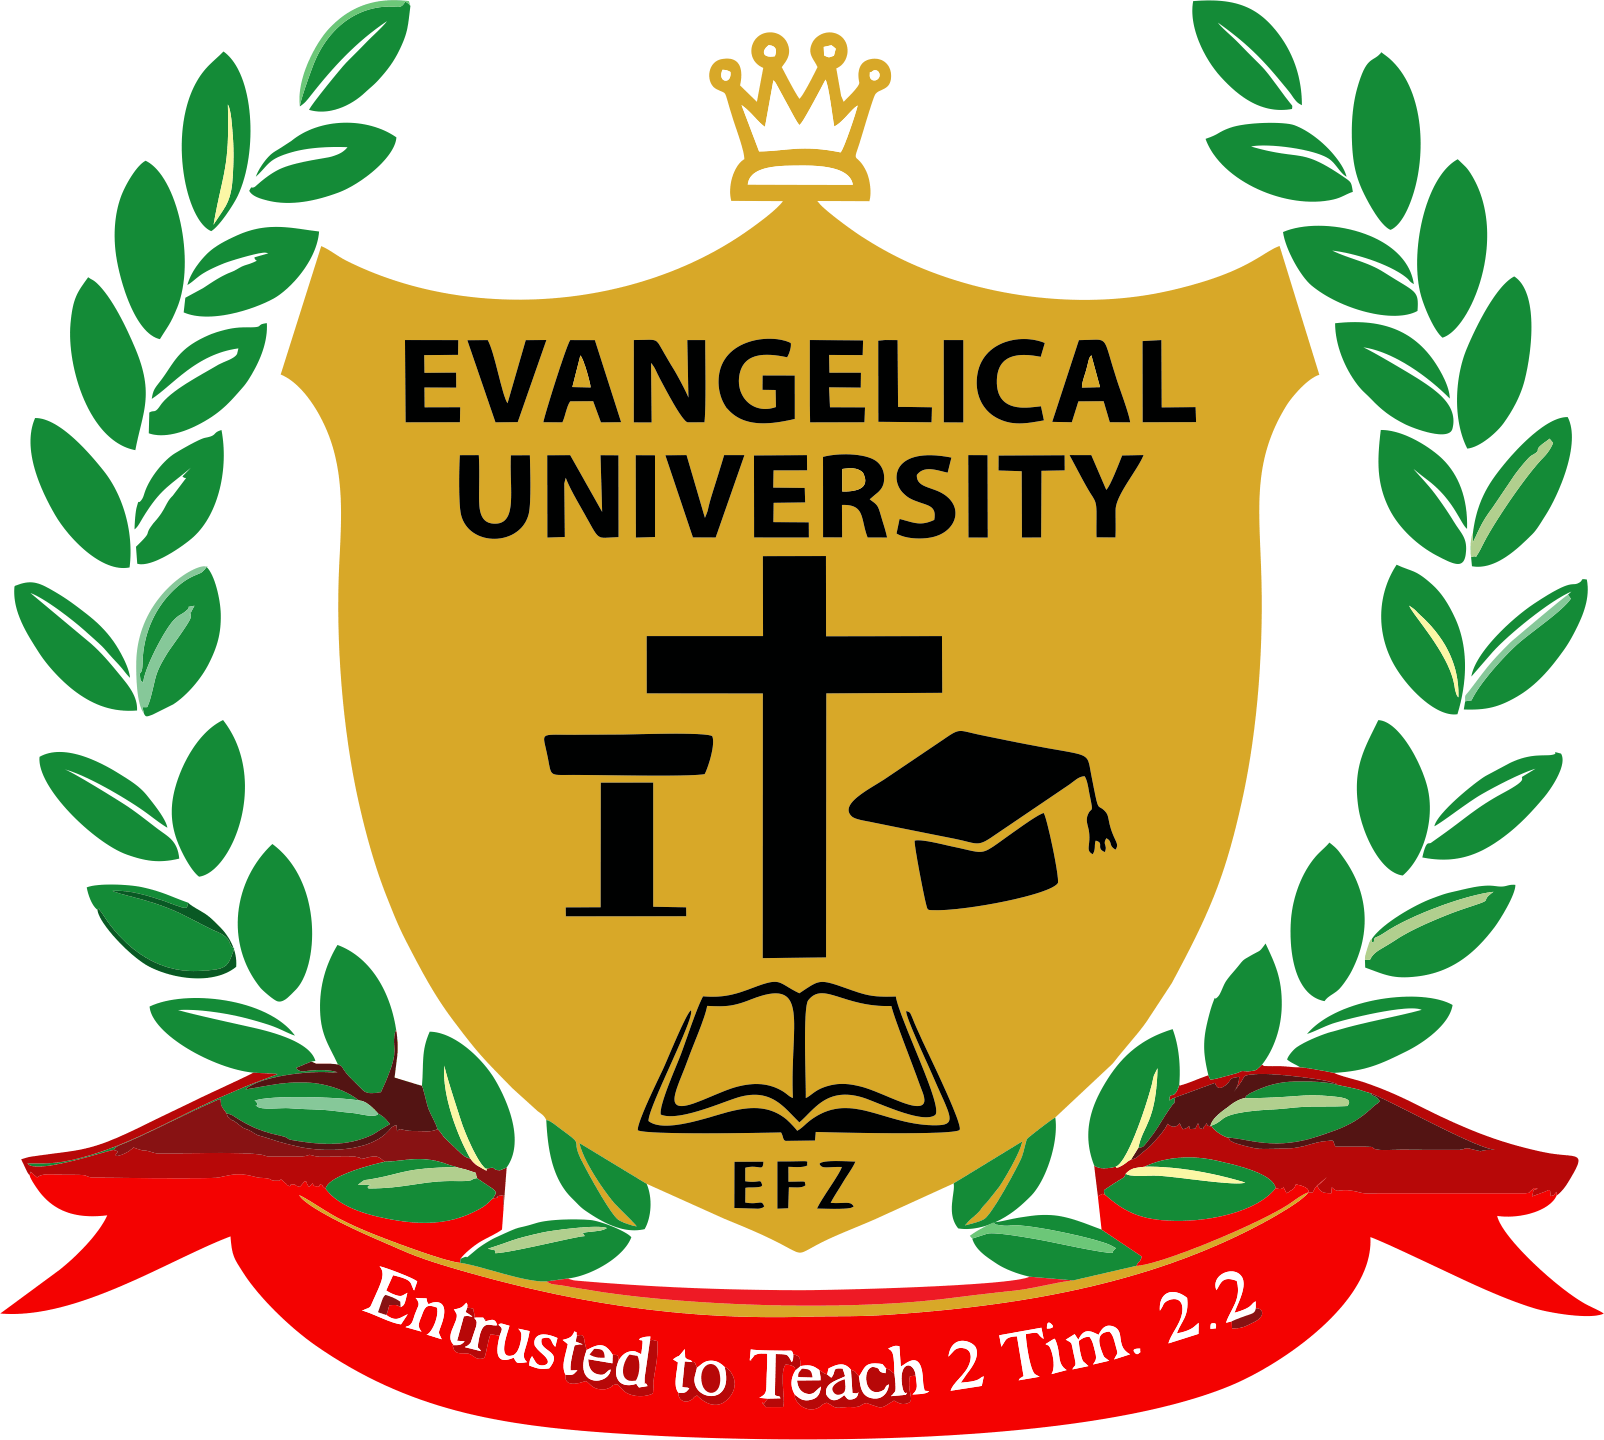 Evangelical University